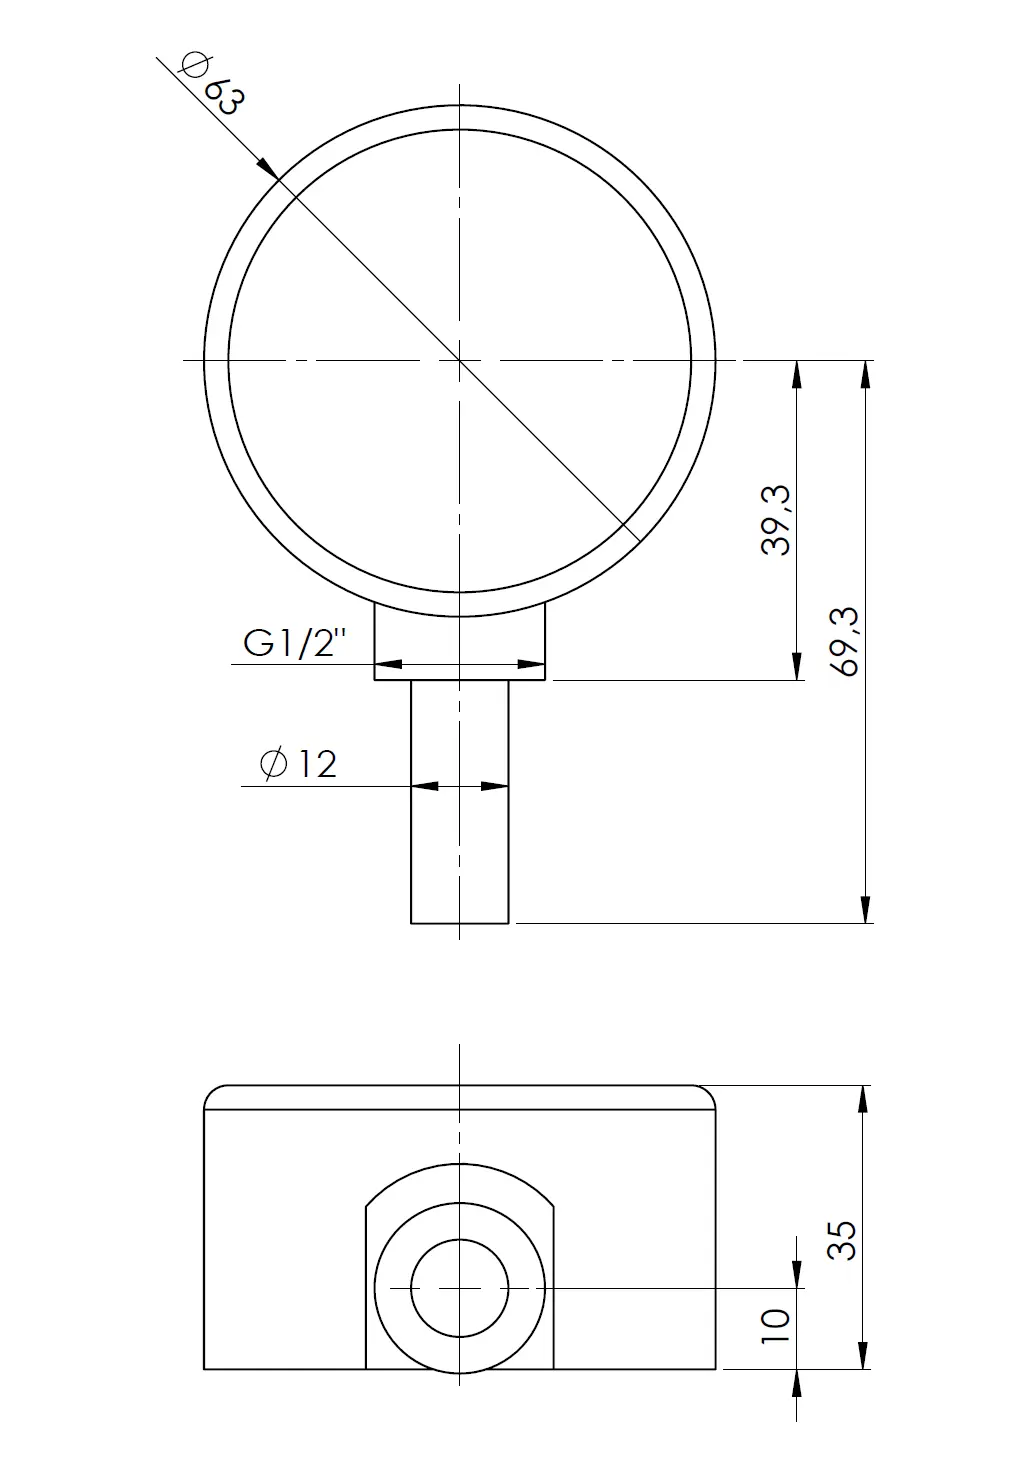 Termometr bimetaliczny BiTh 63, fi63 mm, 0÷120°C, L 40 mm, G1/2", rad, kl. 2 - budowa